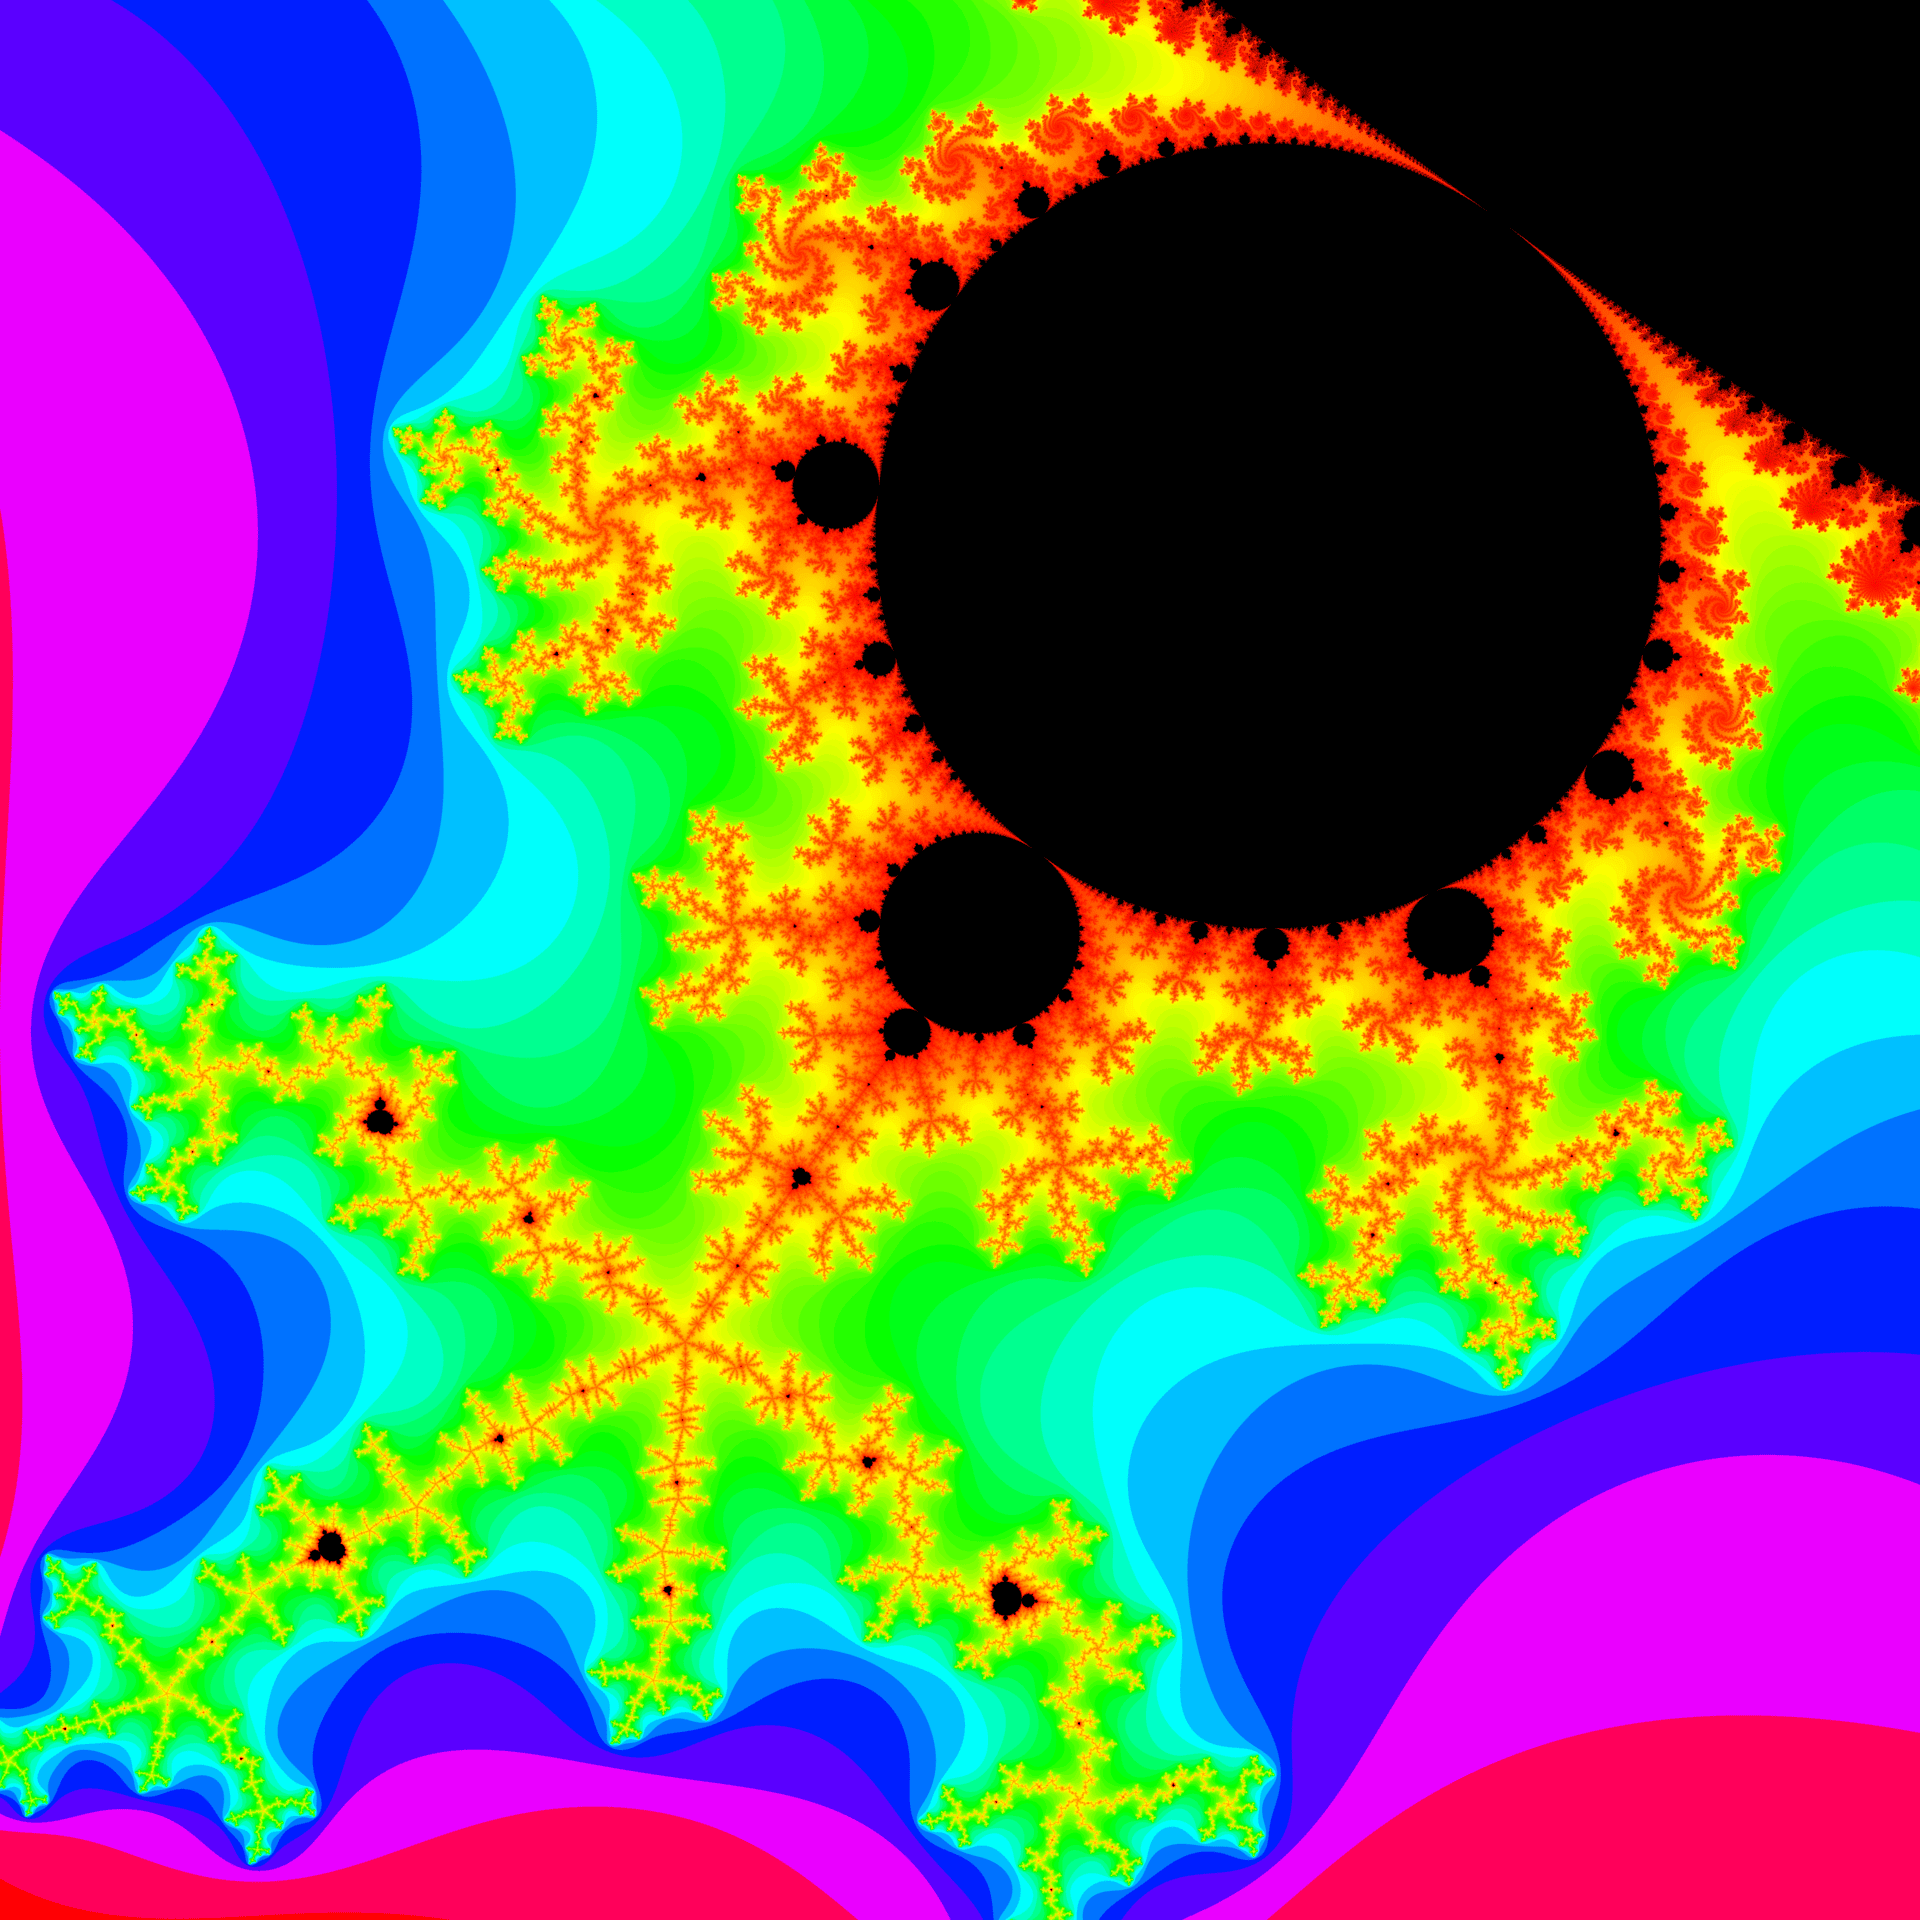 Počítačovo generované obrázky Mandelbrotovej množiny. Táto množina je útvar, ktorý môžeme donekonečna zväčšovať a nachádzať v nej pozoruhodné útvary. Vytvára sa jedinou rovnicou, ktorej výsledky sa zobrazia ako farby. Podľa toho, čo respondentovi výsledný obraz pripomínal, nazval obrázky Anténa a Slnko.